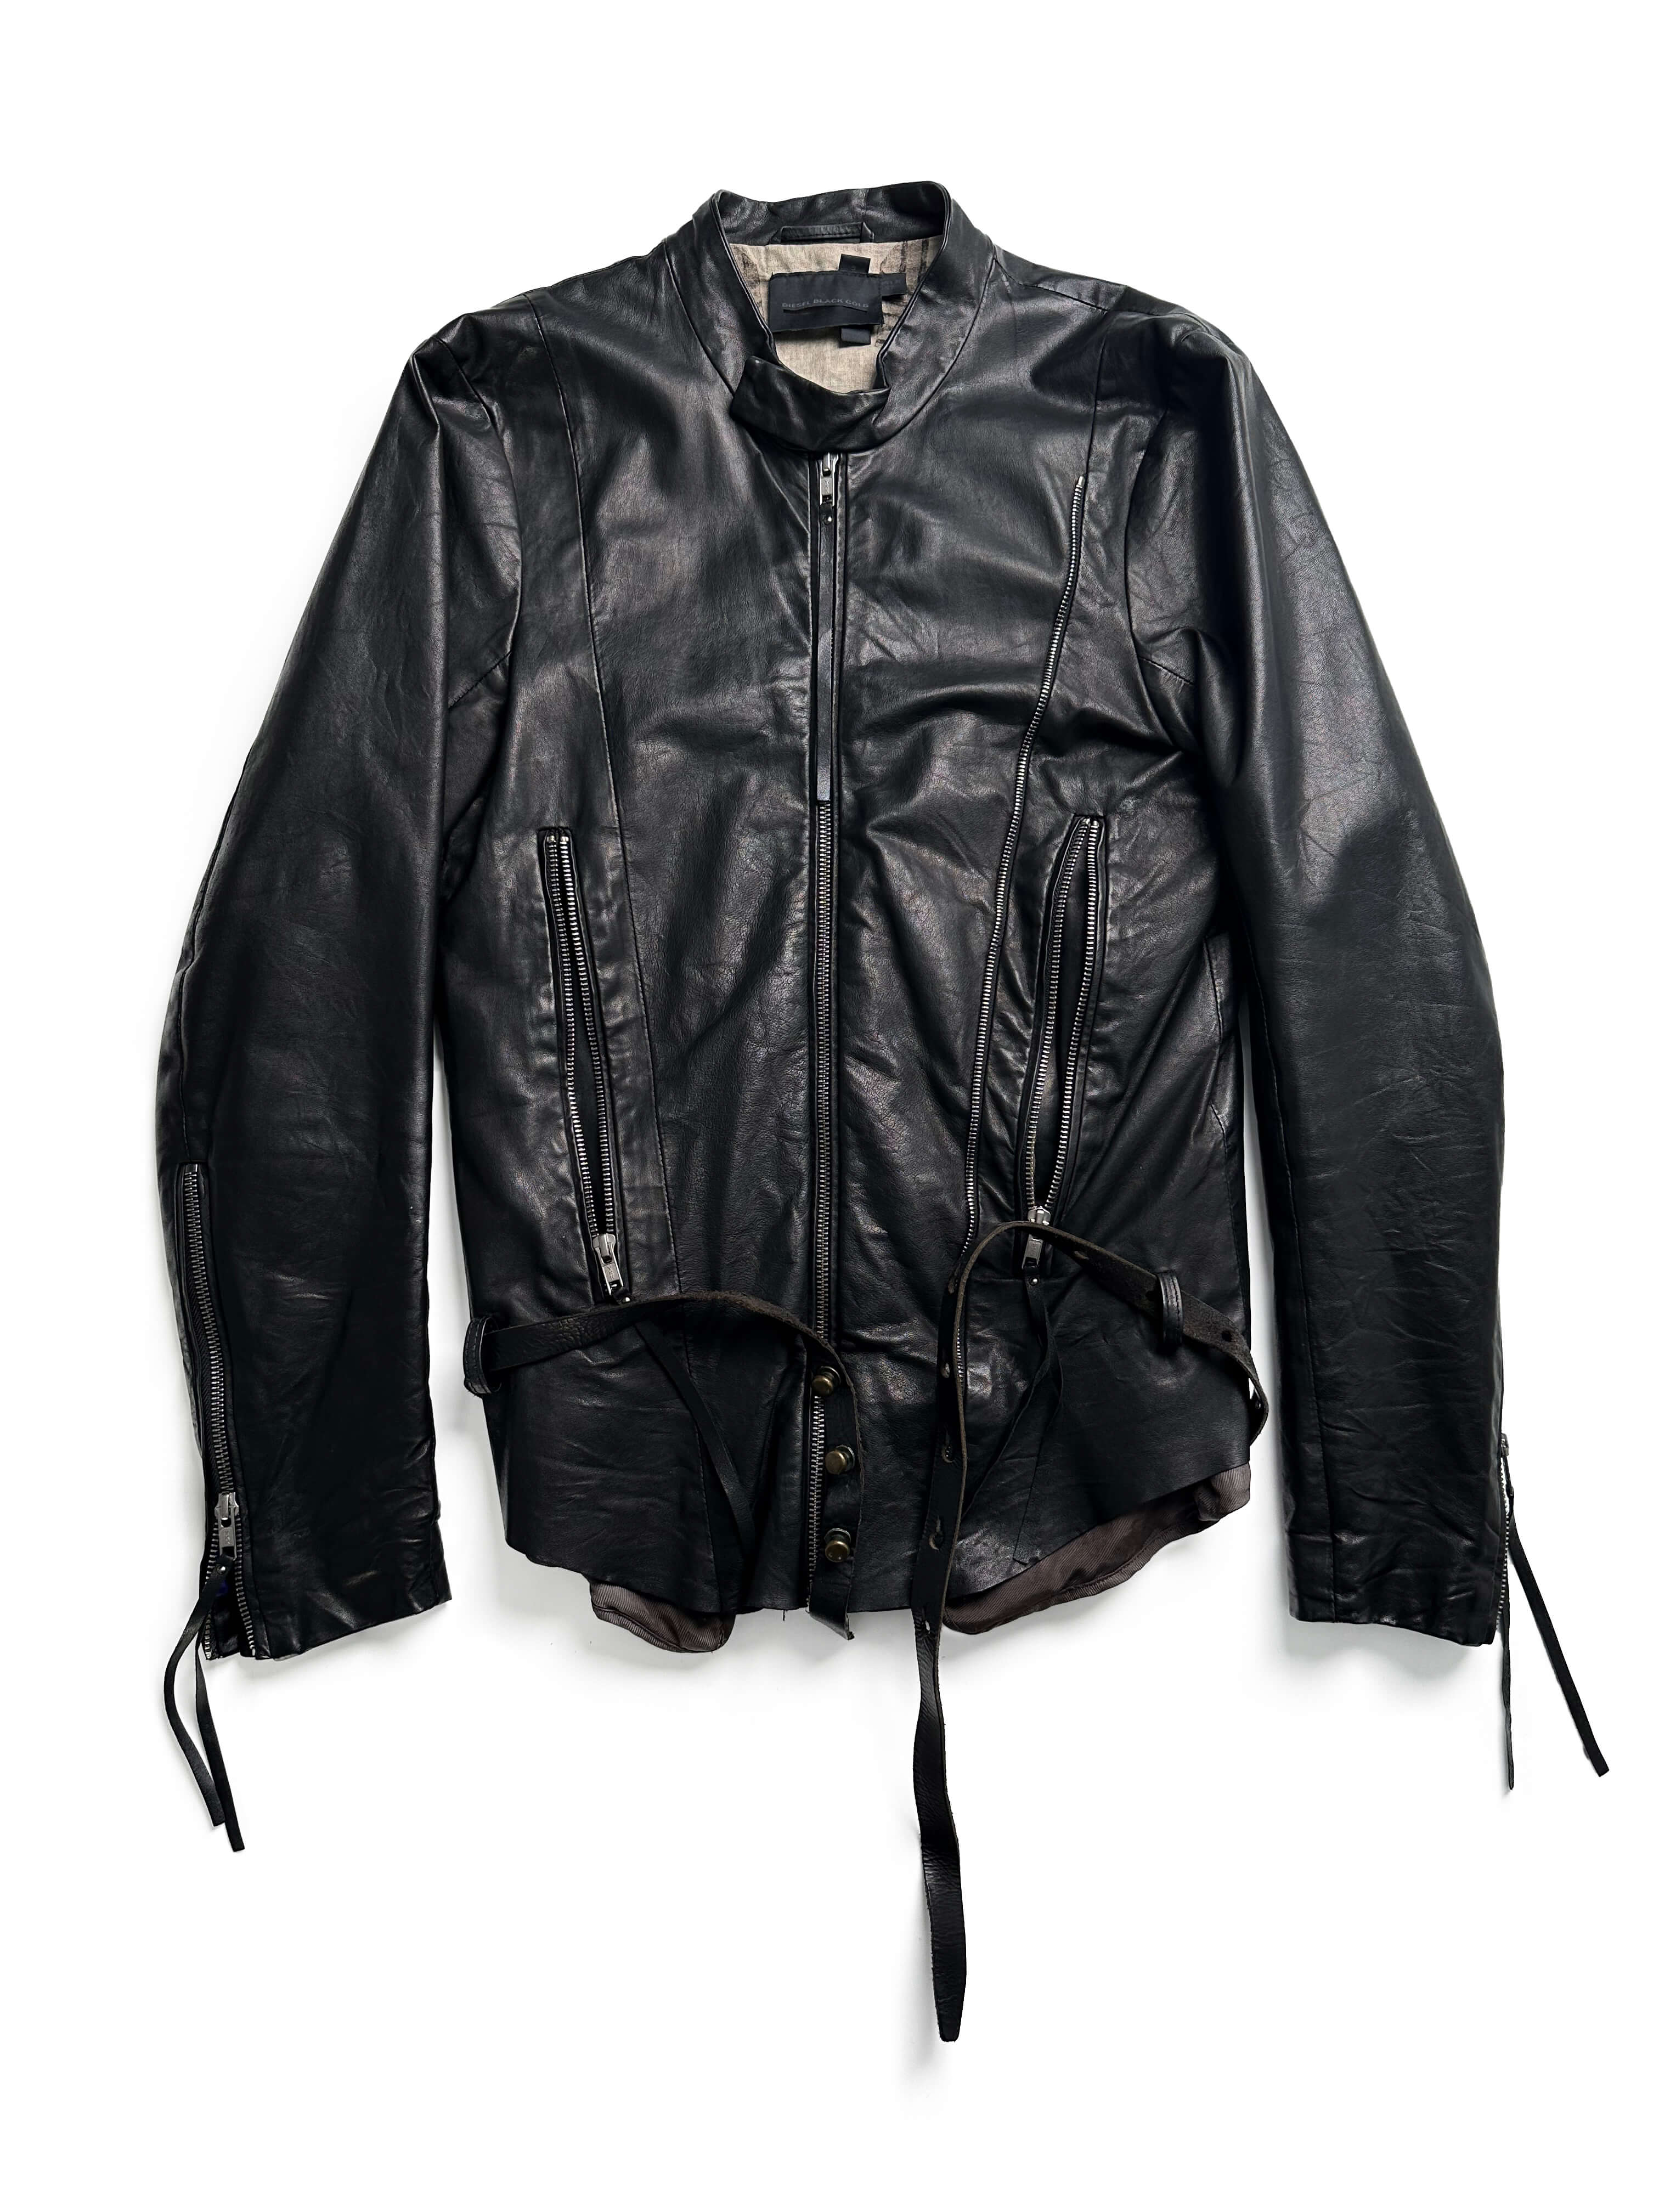 DIESEL BLACK GOLD leather bondage jacket